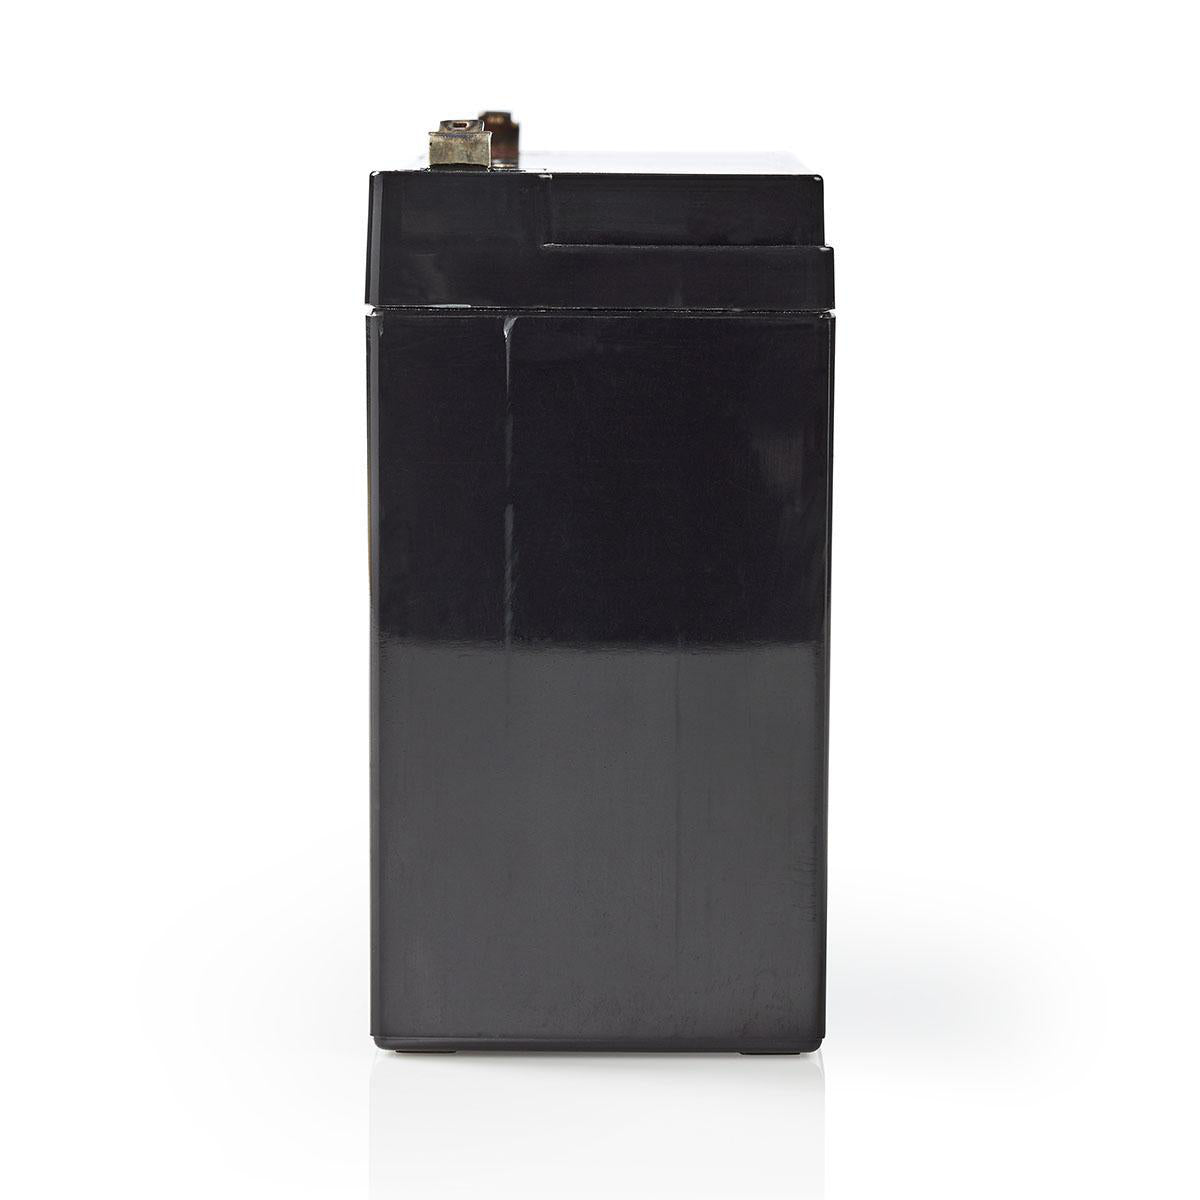 Wiederaufladbare Blei-Säure-Batterie | Bleisäure | Wiederaufladbar | 6 V | 10000 mAh